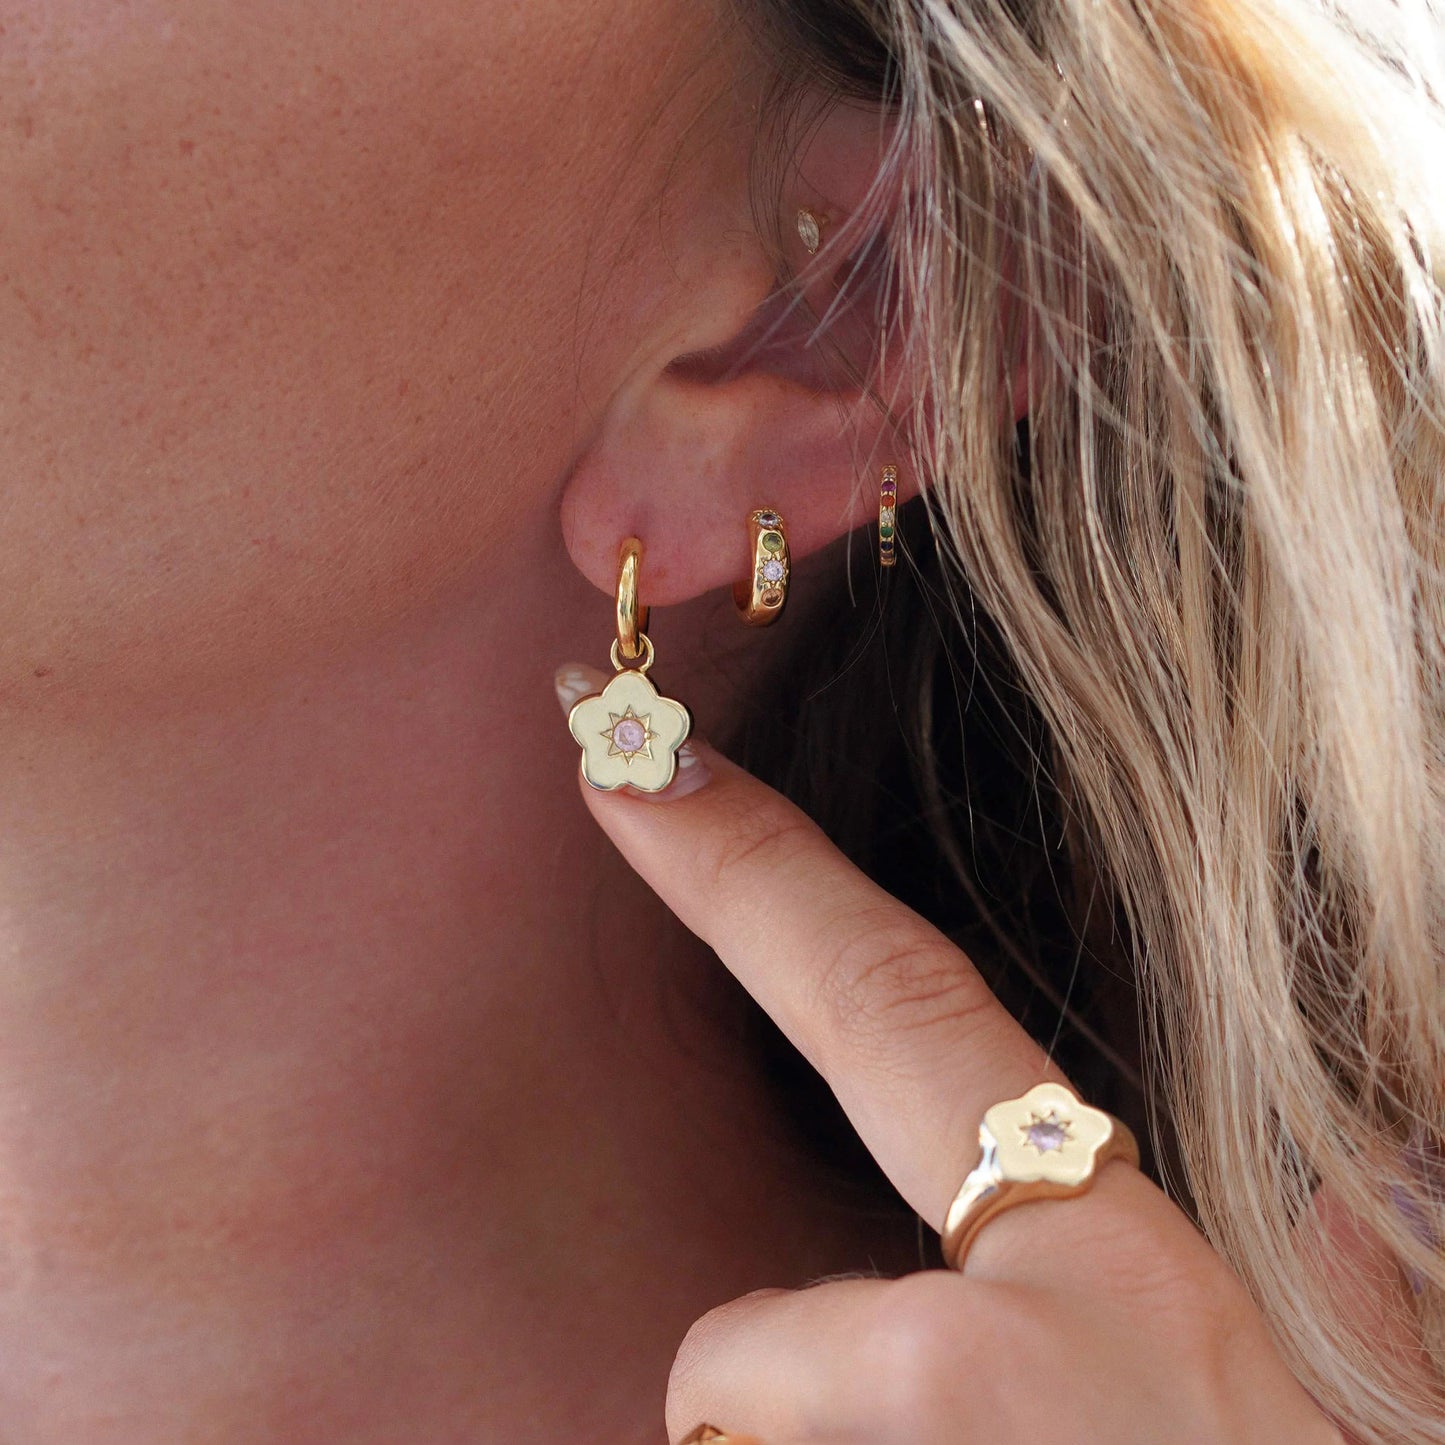 Junk Jewels - Flower Power Gold Charm Hoop Earrings